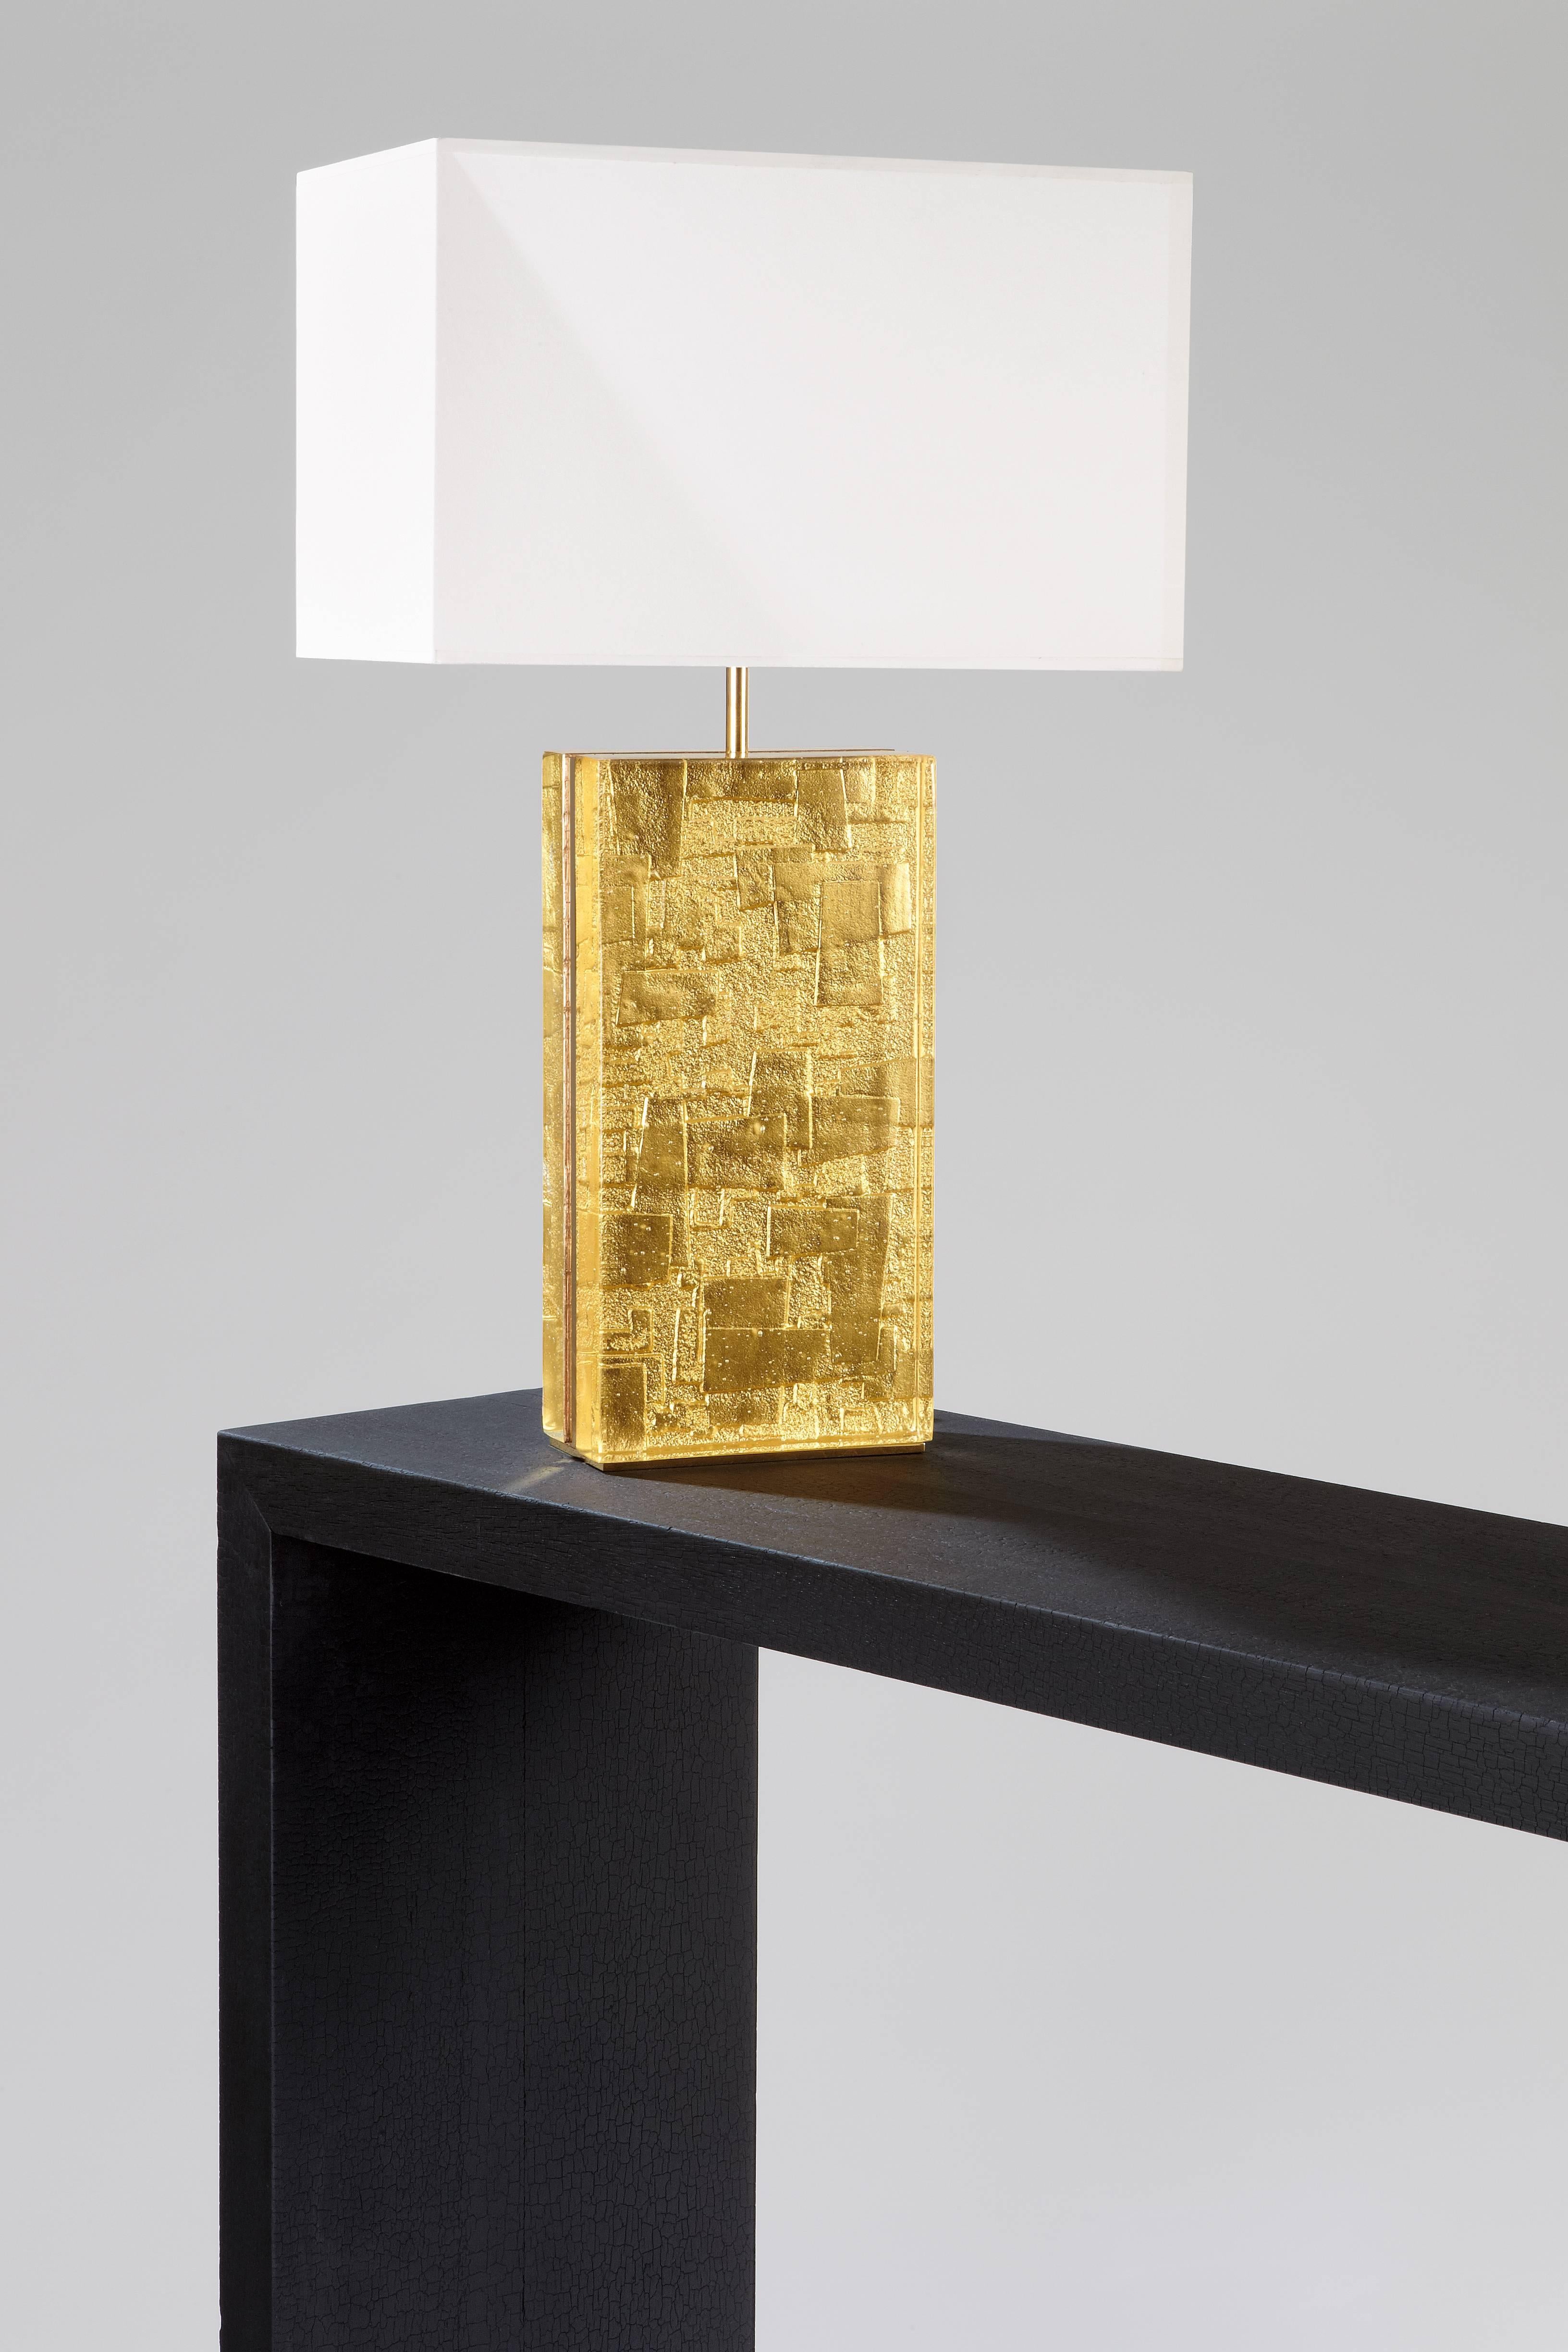 Silvershadow design de Hérve Langlais pour la Galerie Negropontes, composé de verre 